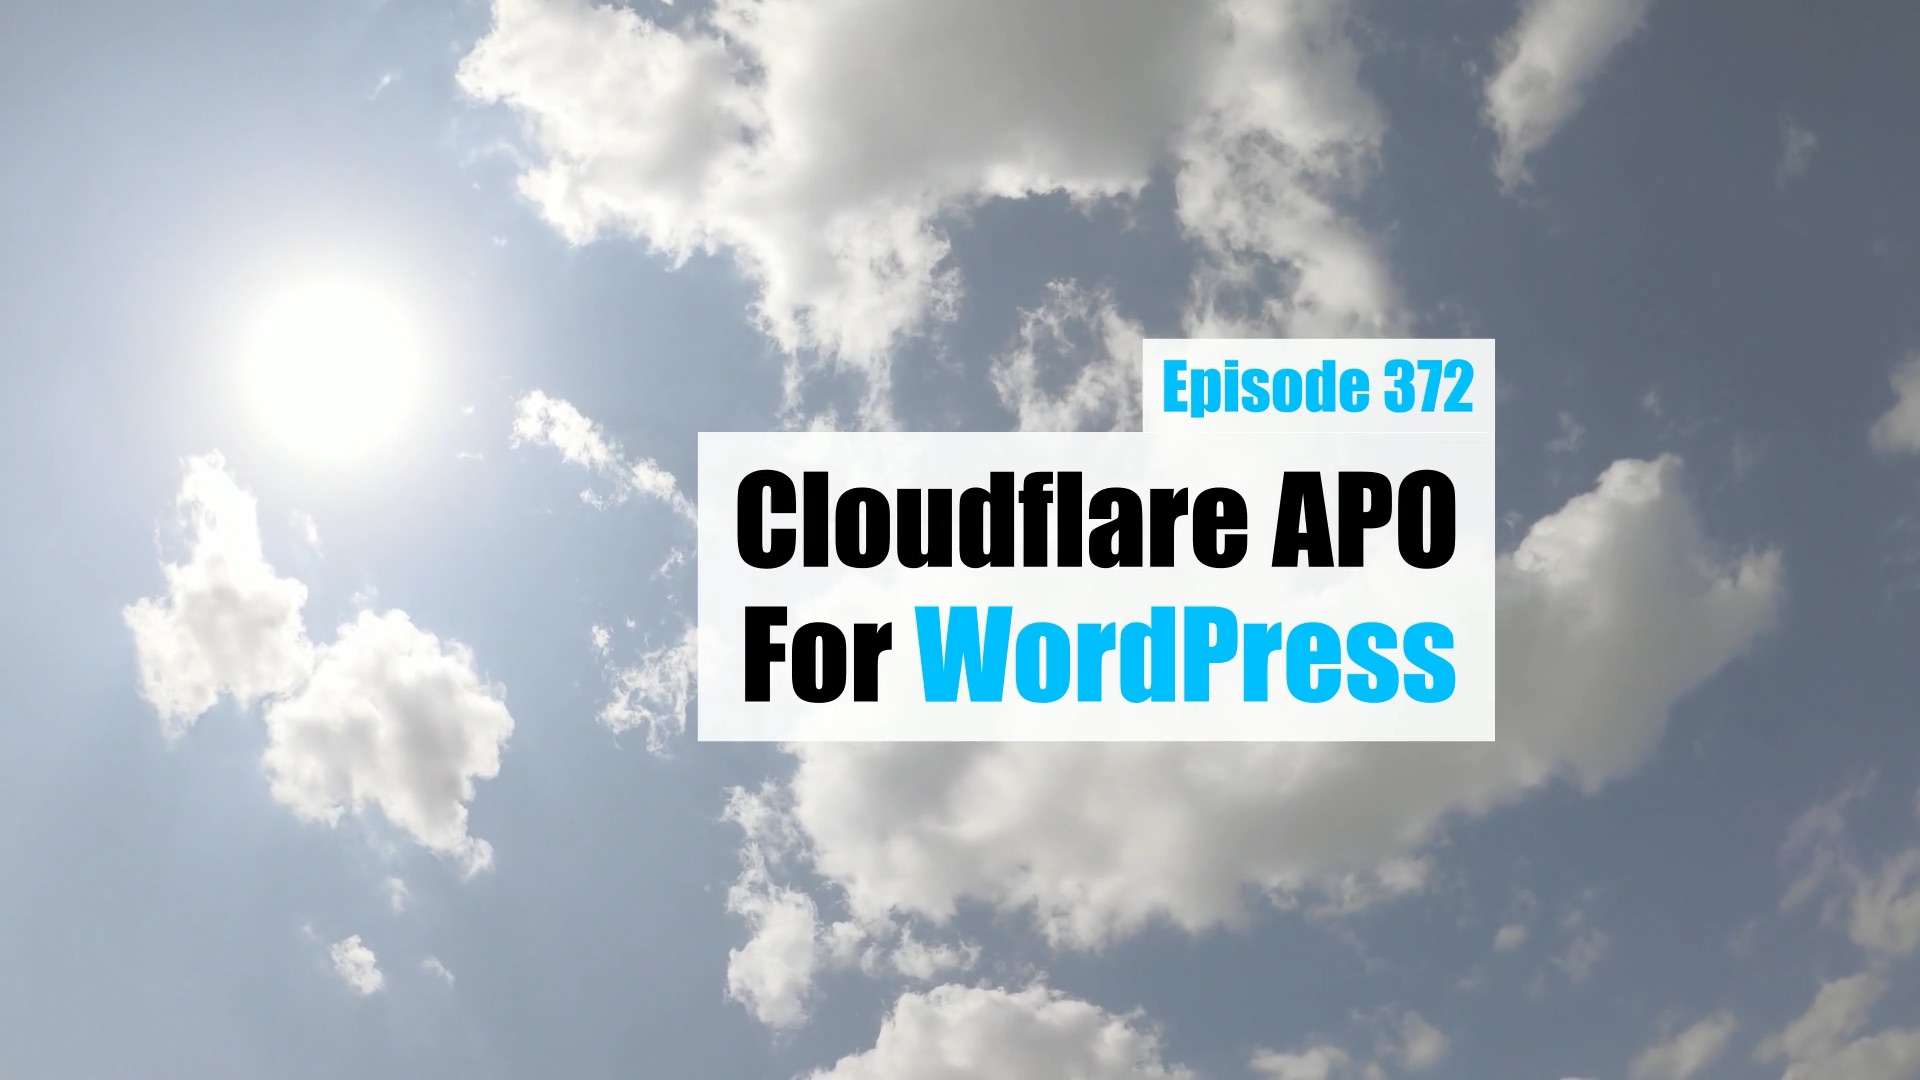 EP372 – Cloudflare APO for WordPress